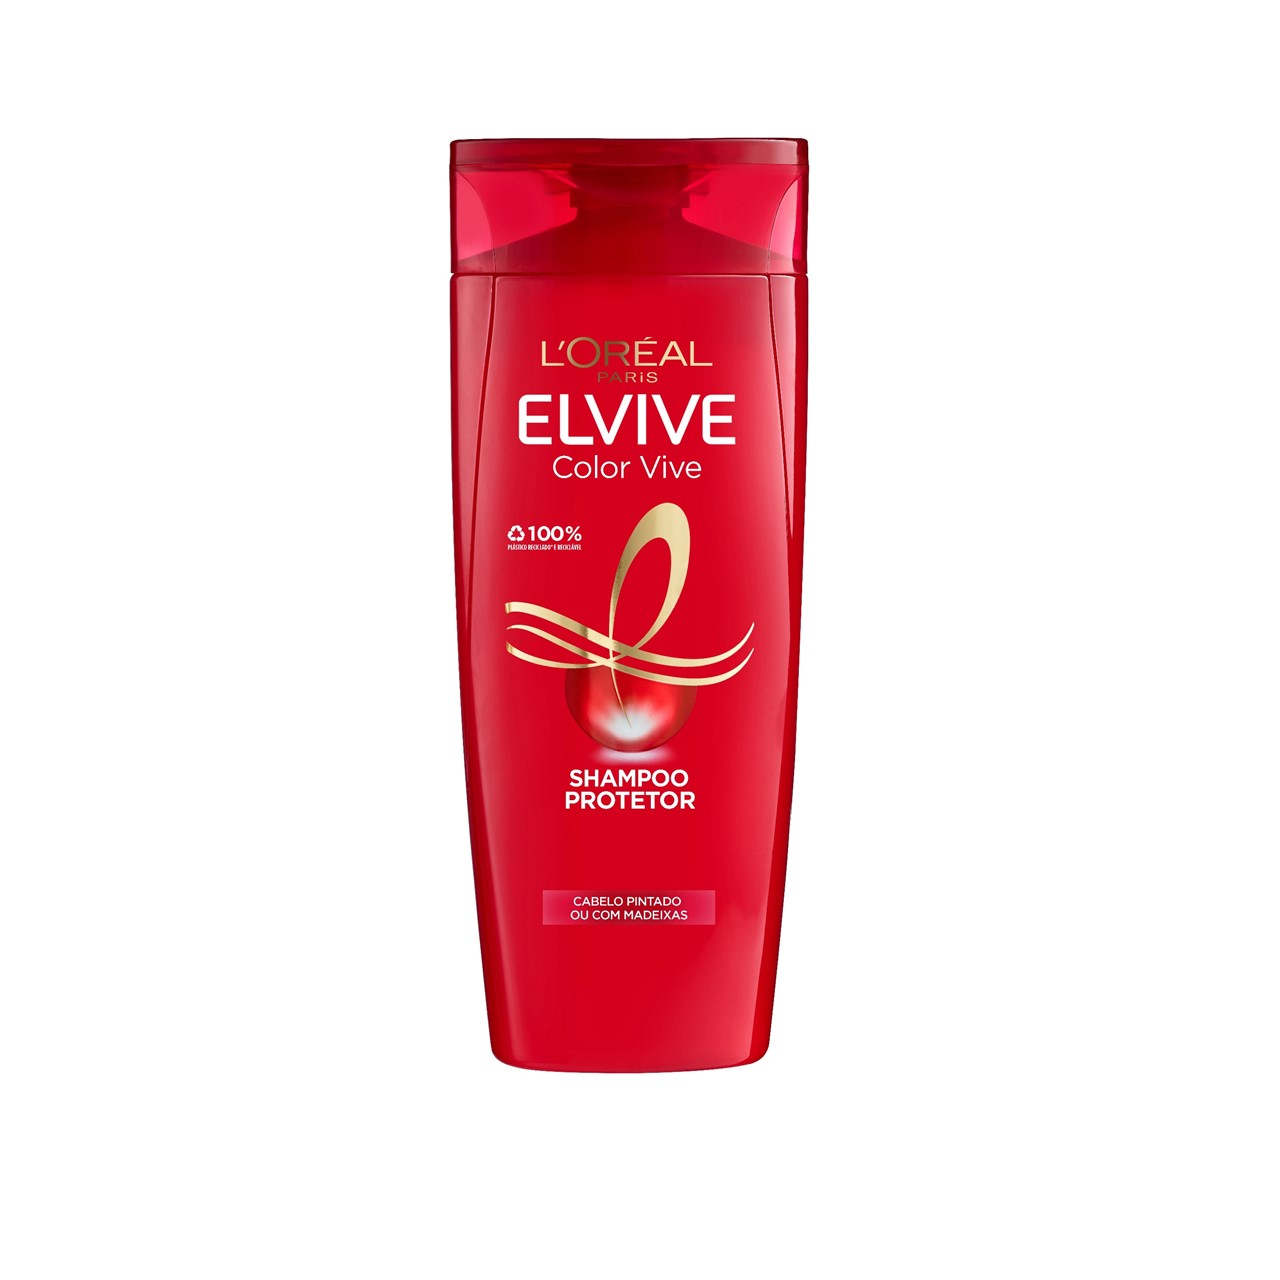 L'Oréal Paris Elvive Color Vive Shampoo 400ml (13.53fl oz)